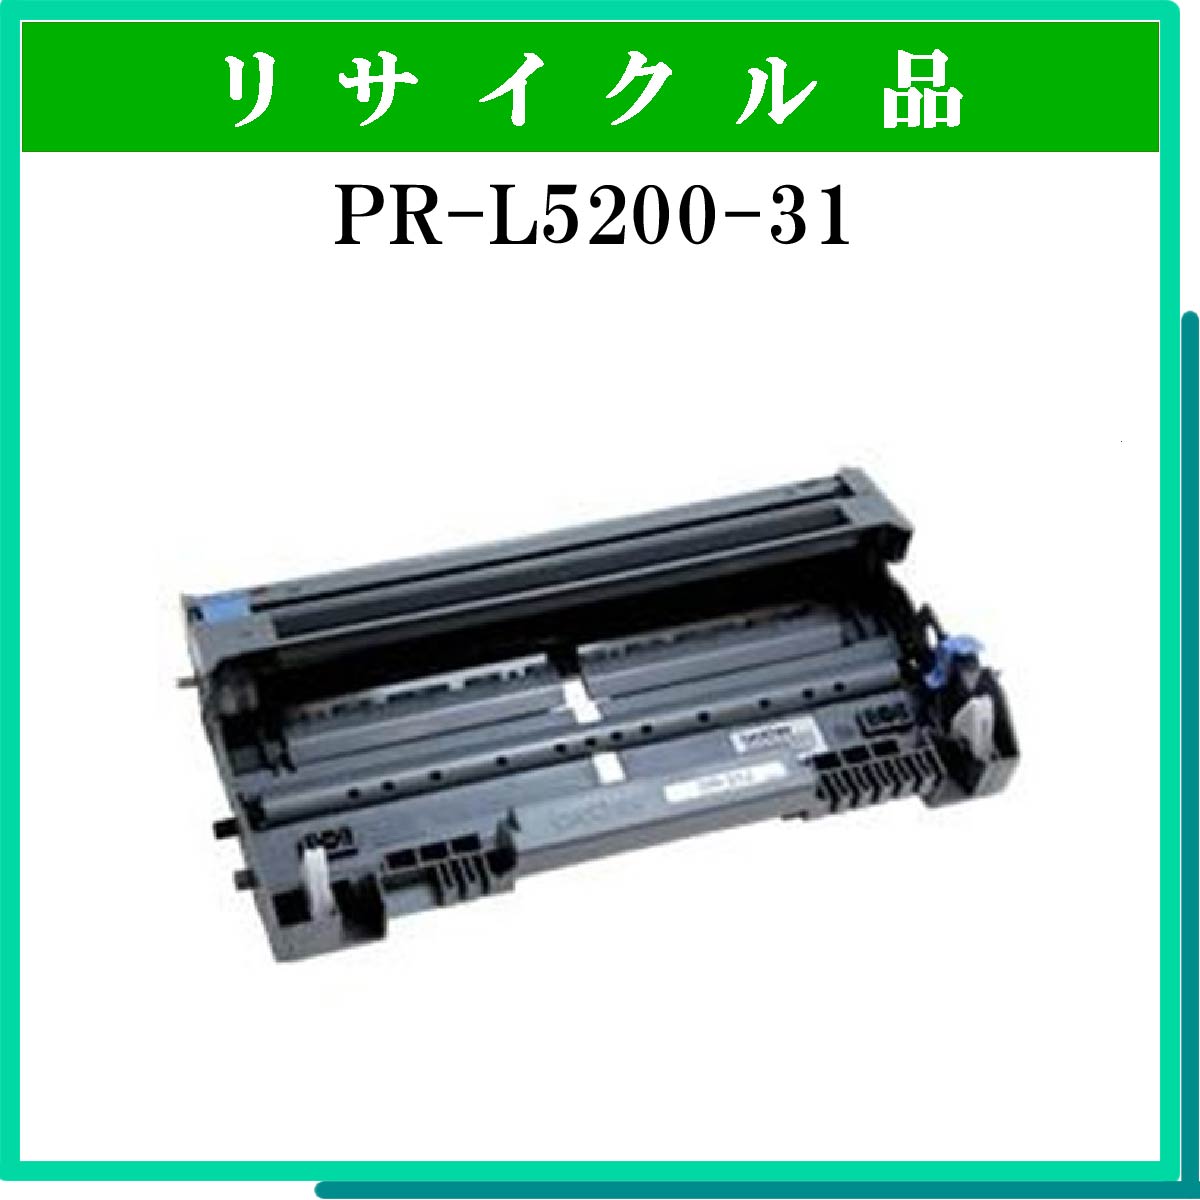 PR-L5200-31